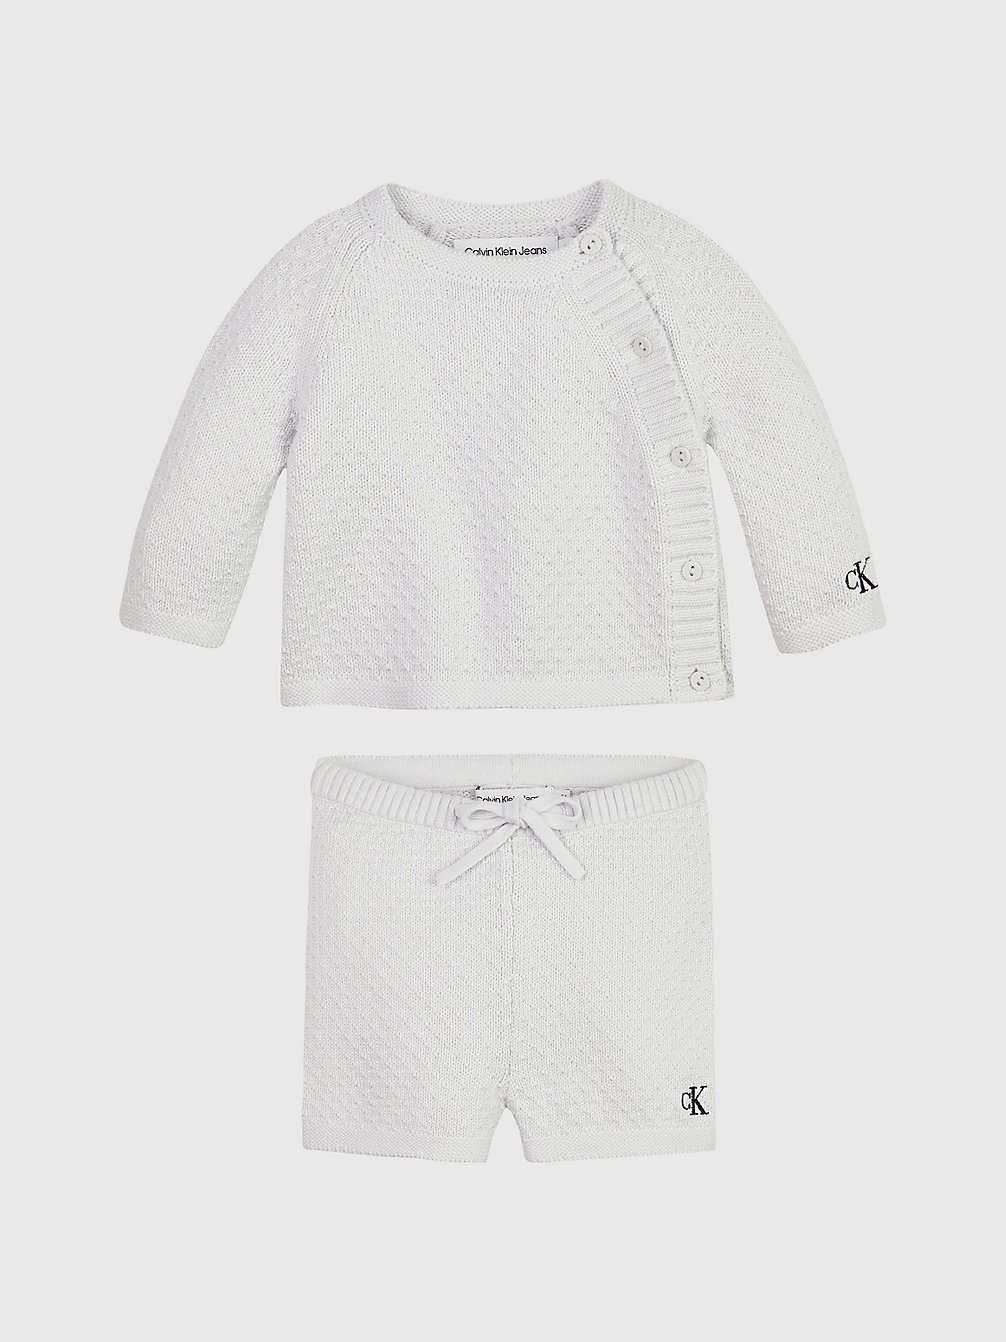 GHOST GREY Newborn Jumper And Shorts Set undefined newborn Calvin Klein